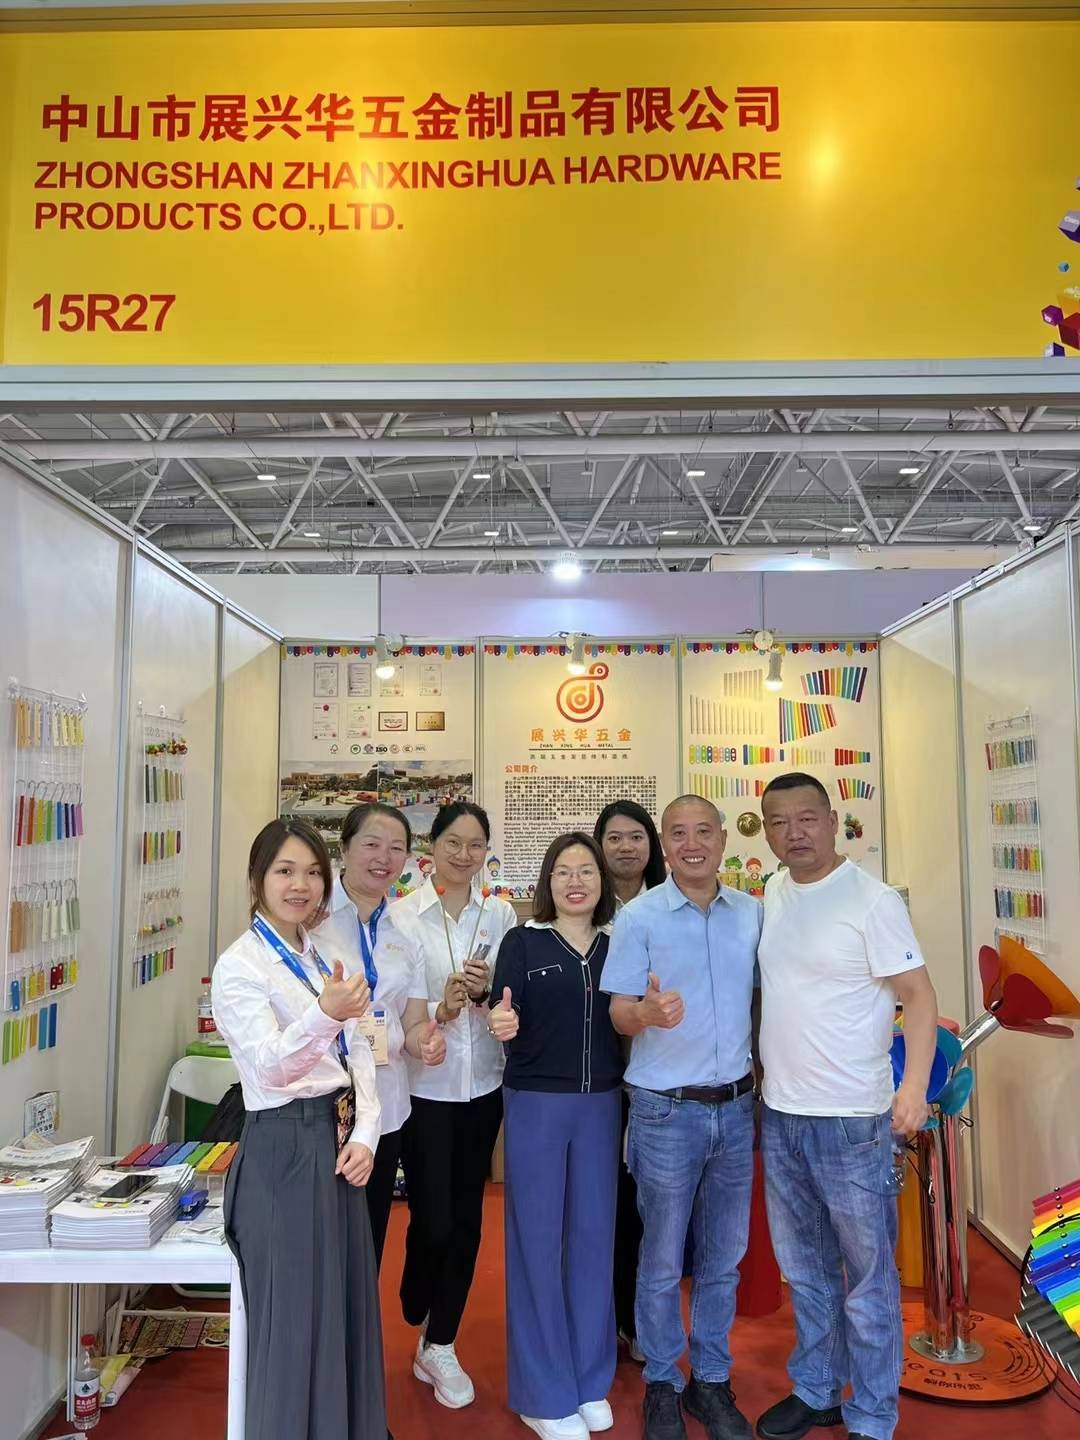 ¡La 36ª Exposición Internacional de Juguetes y Productos Educativos (Shenzhen) concluyó con éxito!